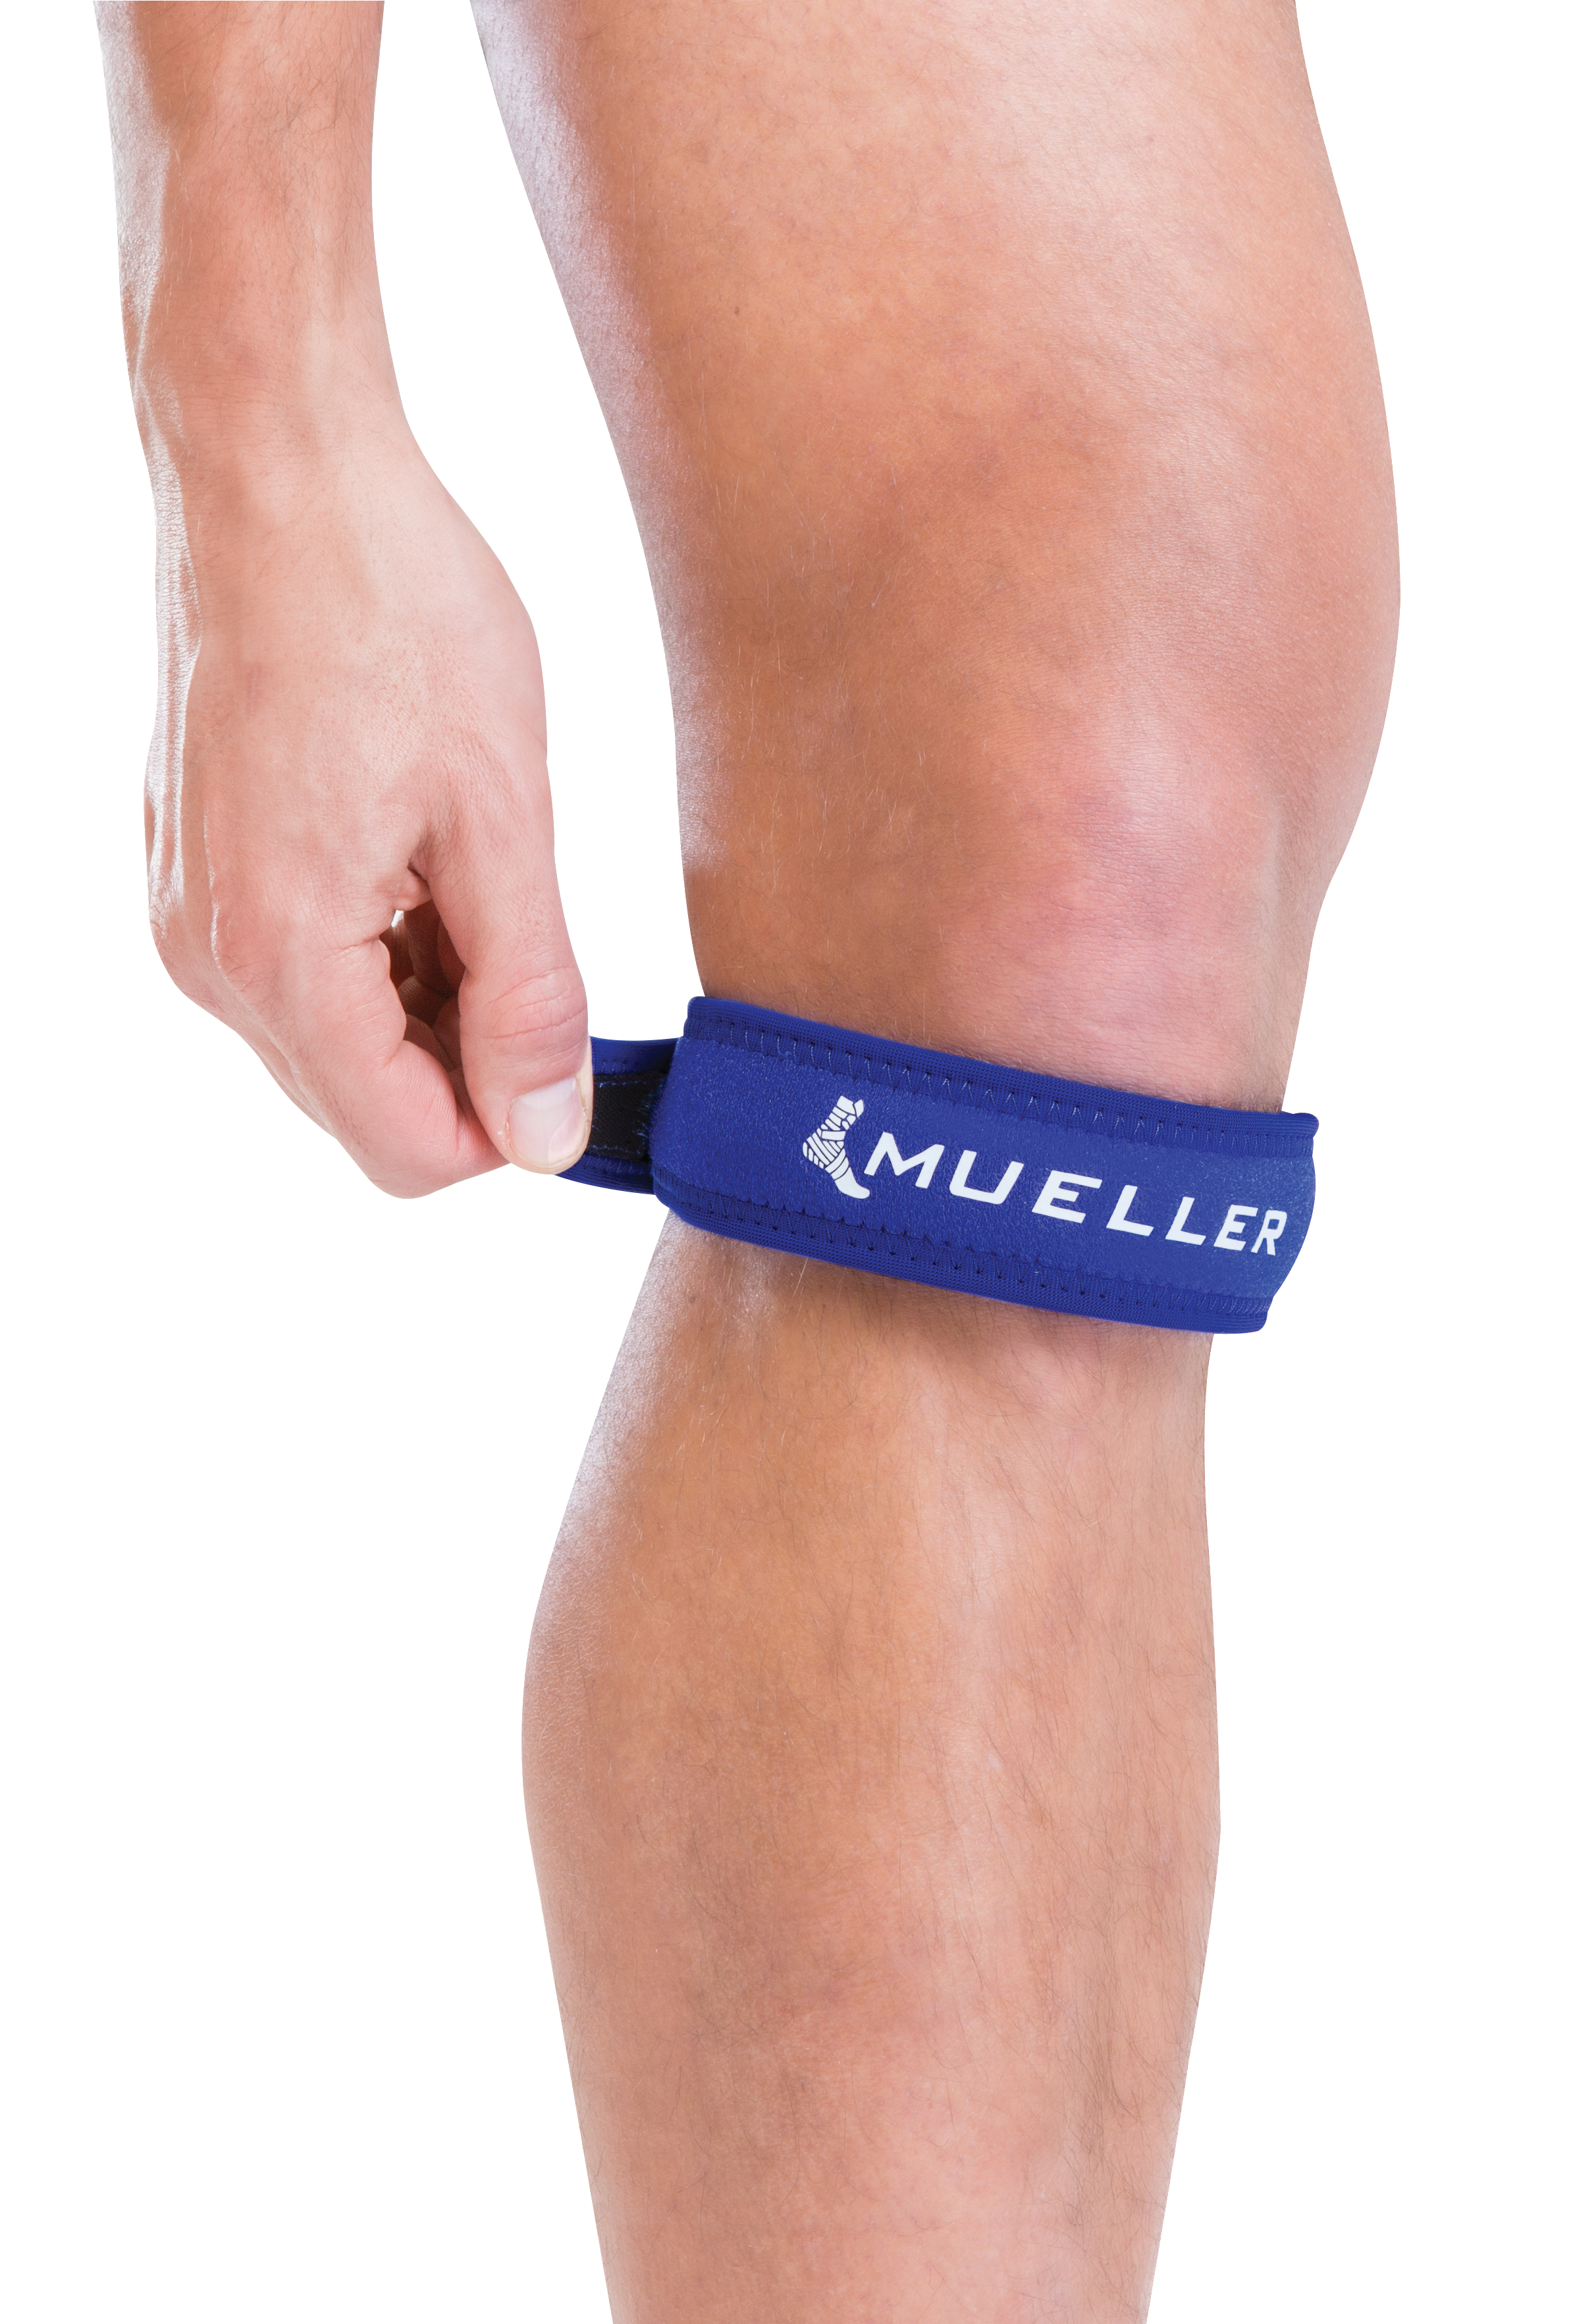 Mueller Jumper's Knee Strap Blau 53997 Produkt am Knie